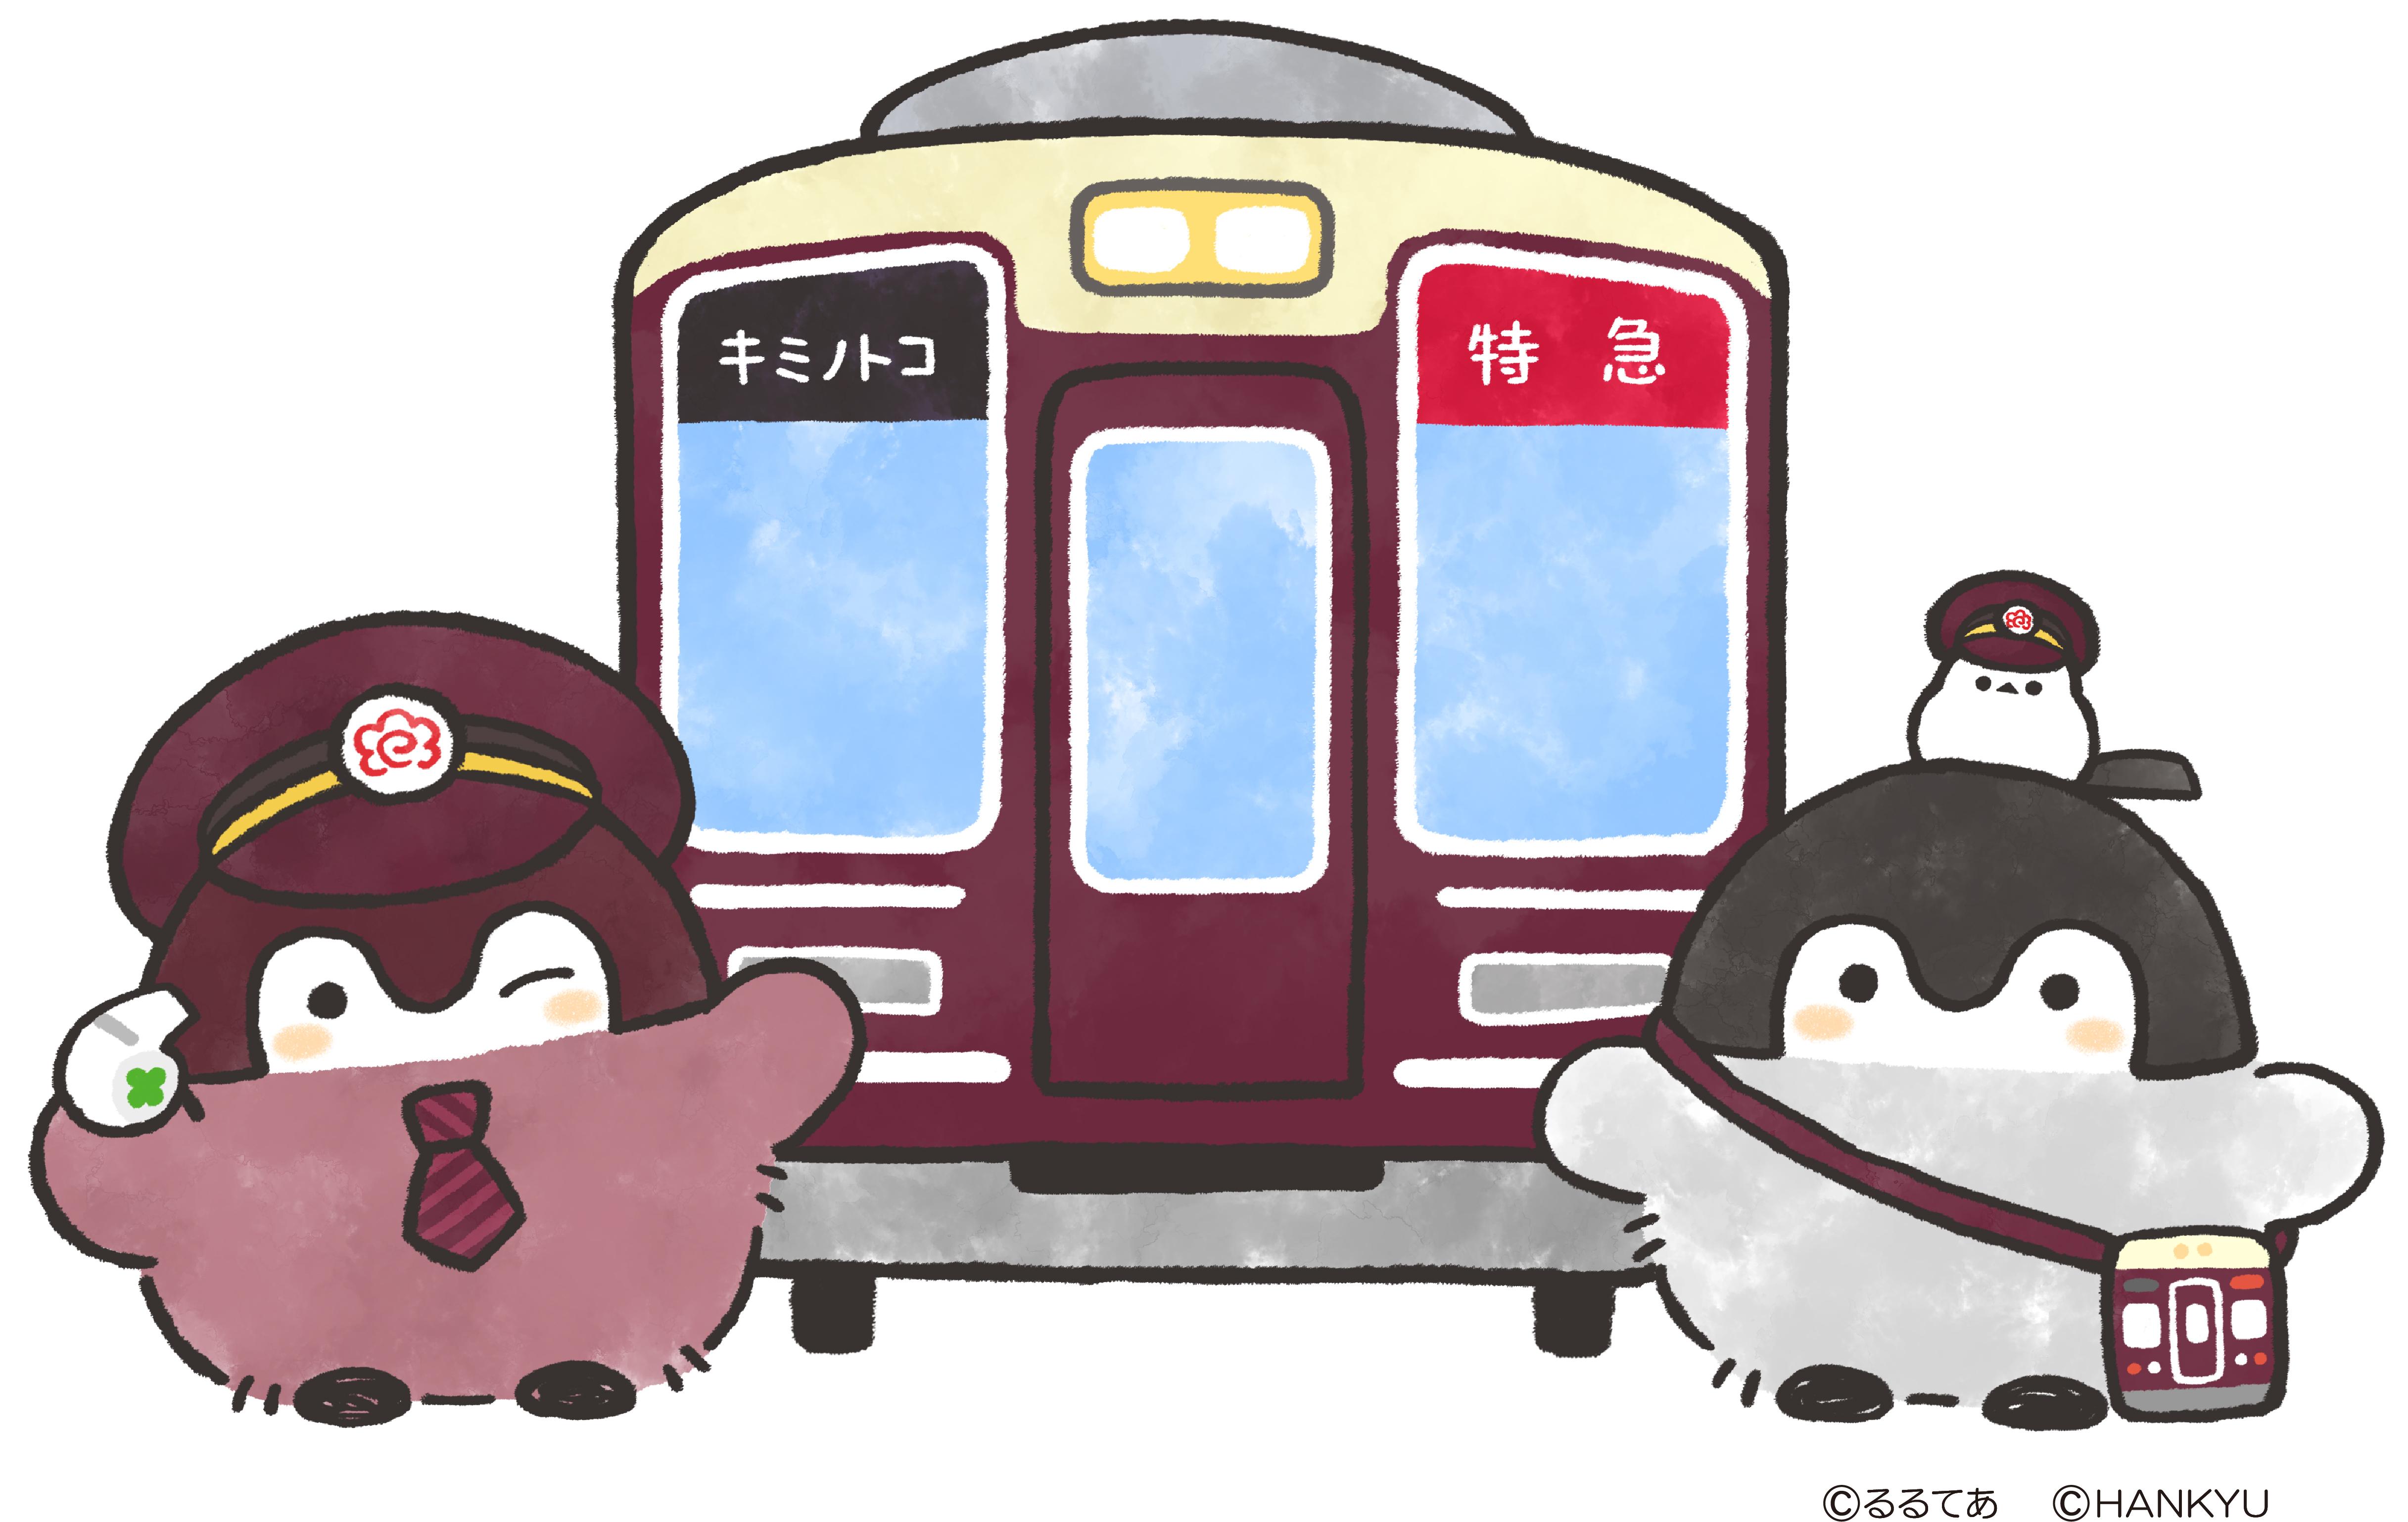 阪急電鉄とコウペンちゃんのコラボレーションが決定 7 14 水 コウペンちゃん号 を運行します レールファン阪急 阪急電車 公式鉄道ファンサイト 阪急電鉄